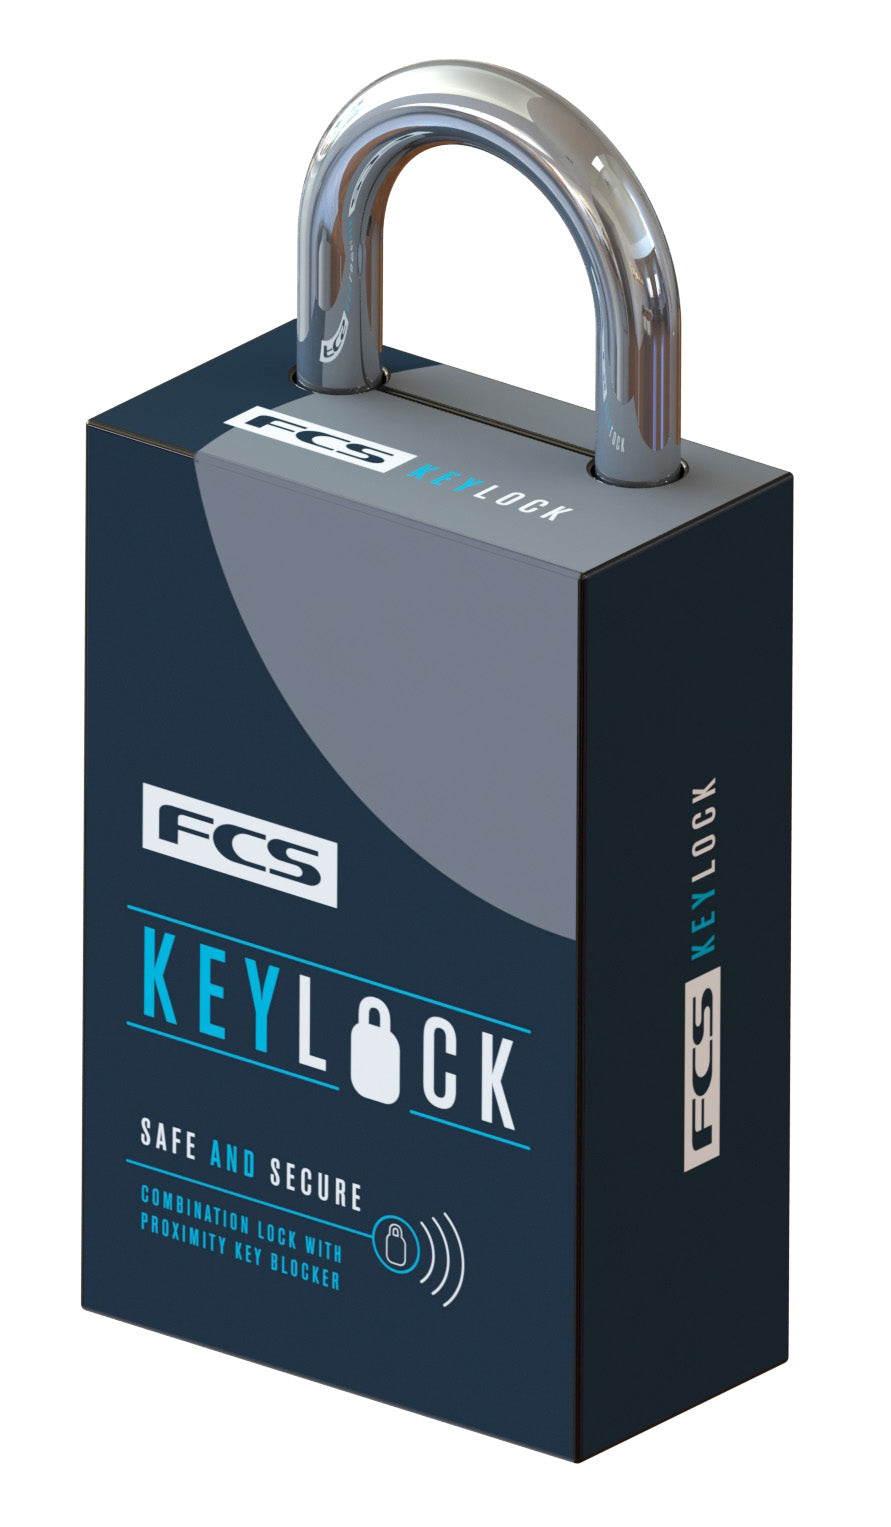 FCS Key Lock